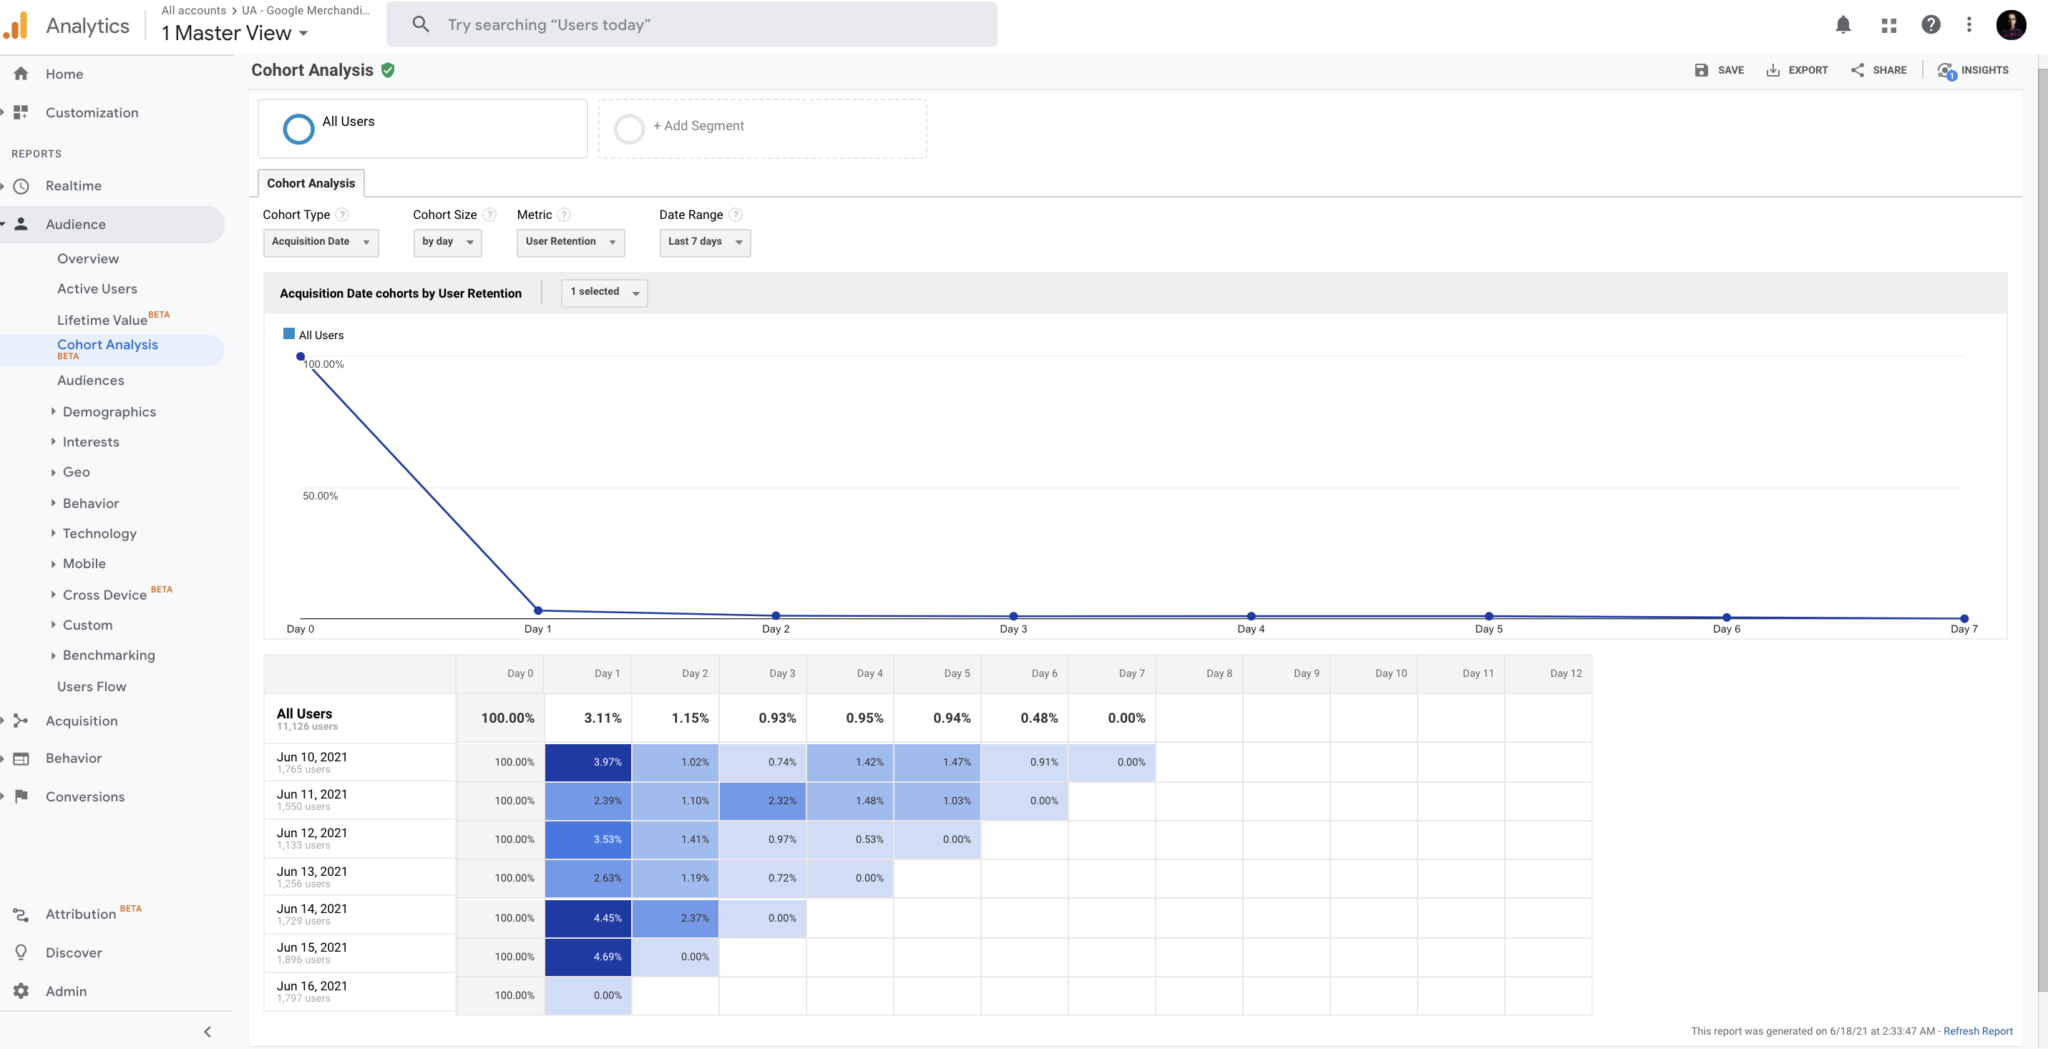 Google Analytics'te Google Merchandise Store'un Chort Analysis raporundan örnek bir ekran görüntüsü.